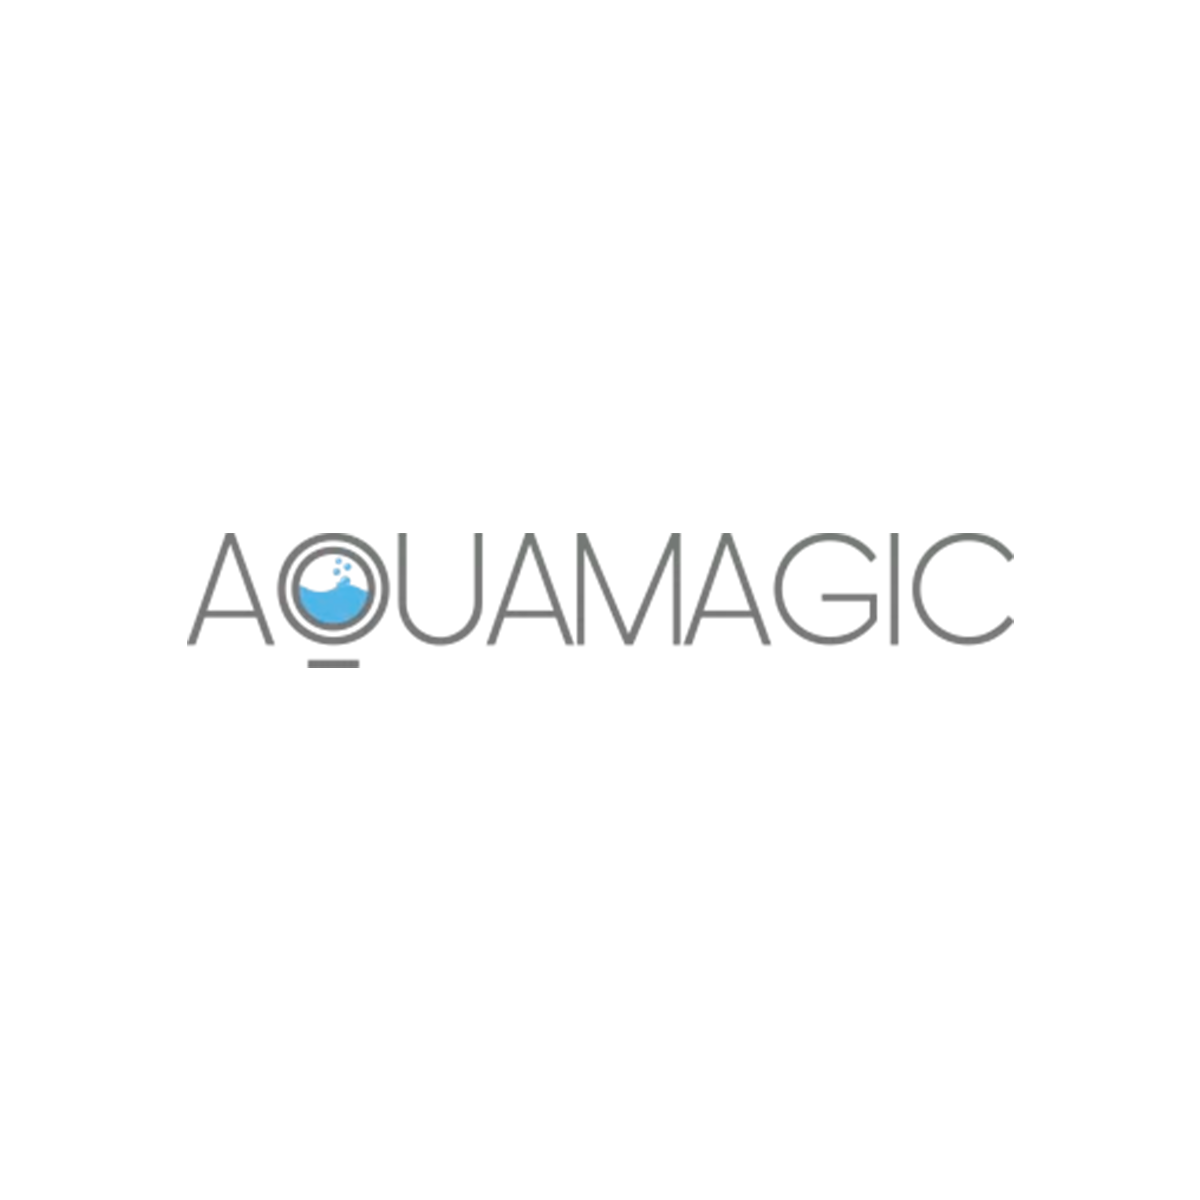 AquamagicAquamagic